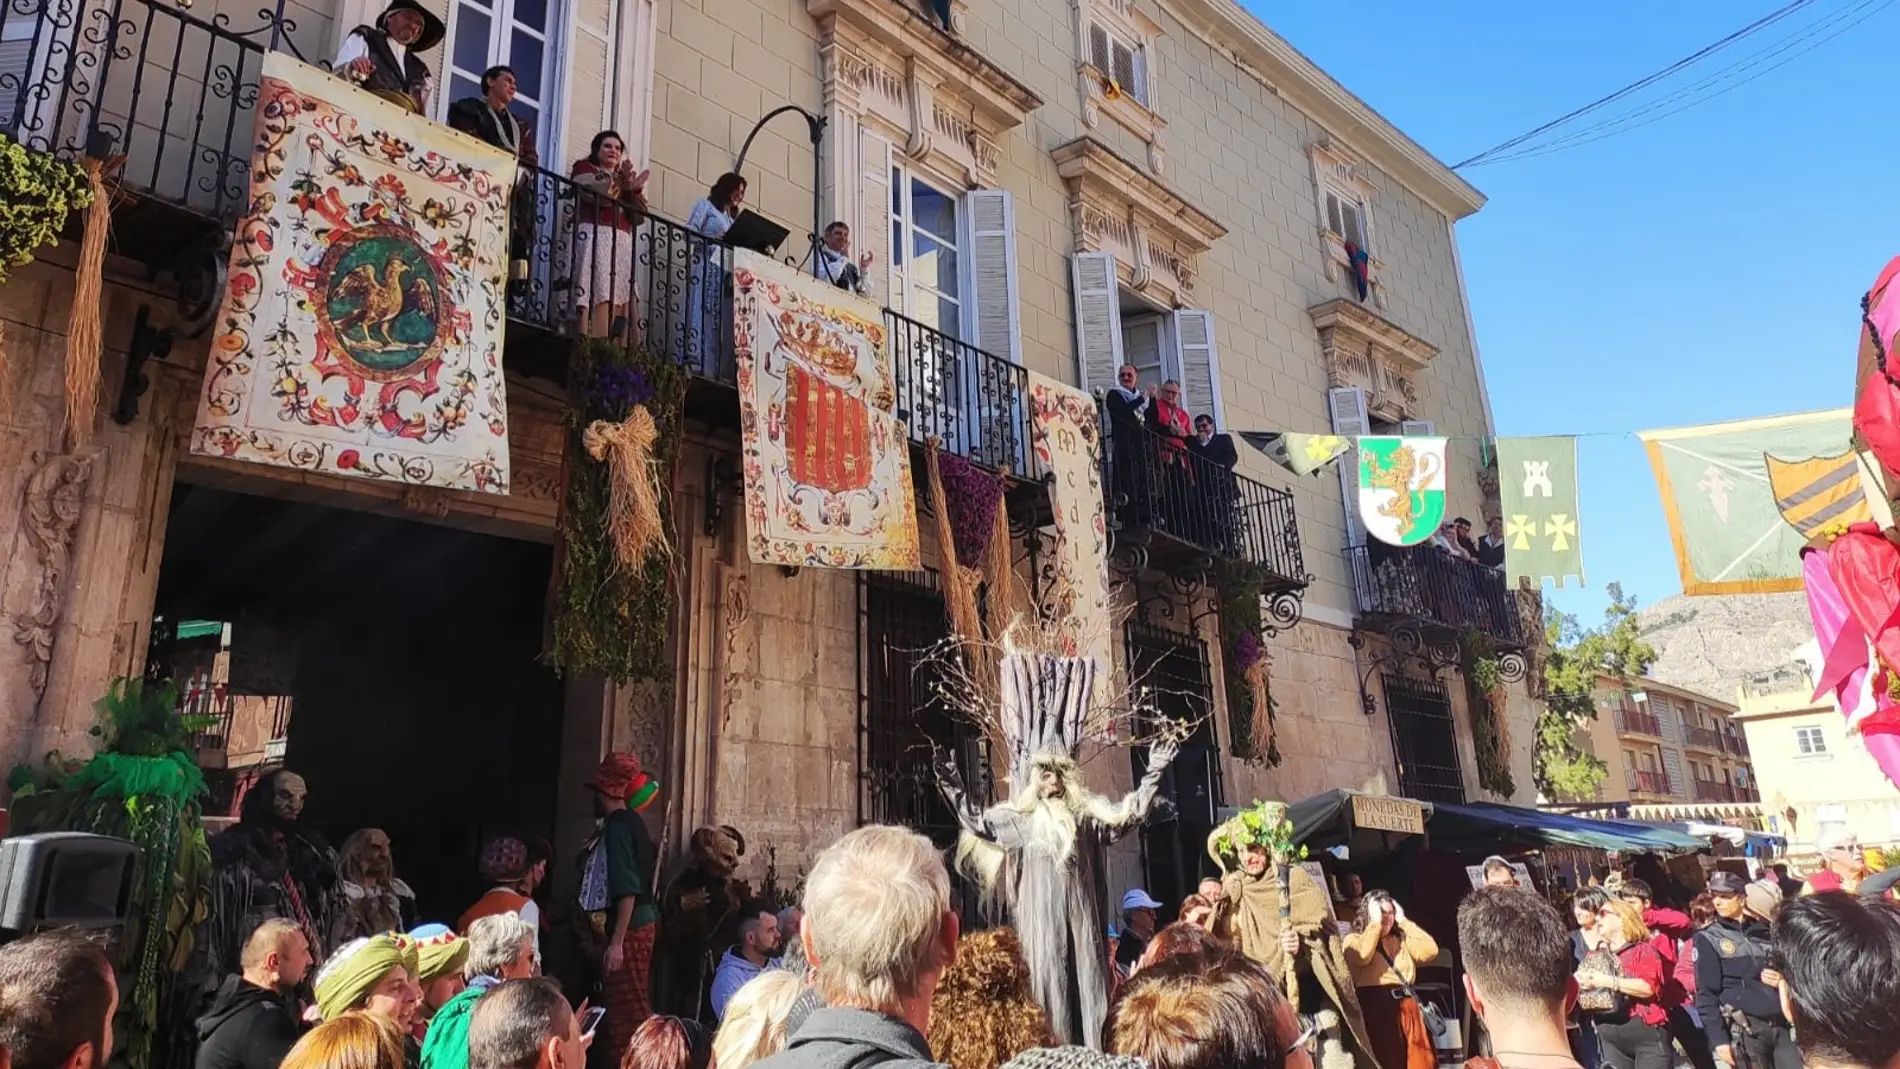 El casco histórico de Orihuela acoge este fin de semana el Mercado Medieval con novedades